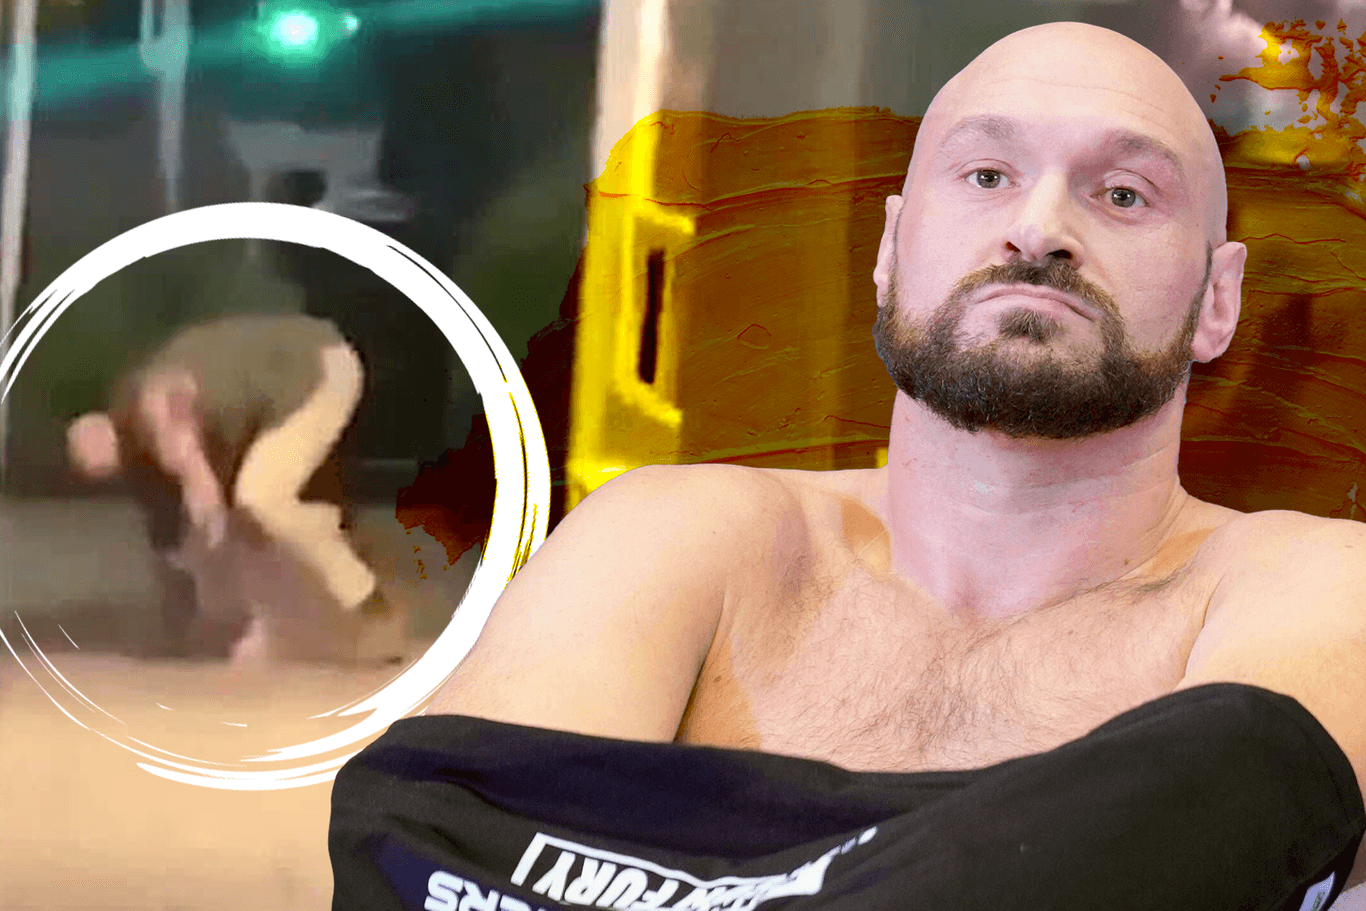 Fury nach Bar-Besuch: Ein Video zeigt, dass er sich nicht mehr auf den Beinen halten kann.